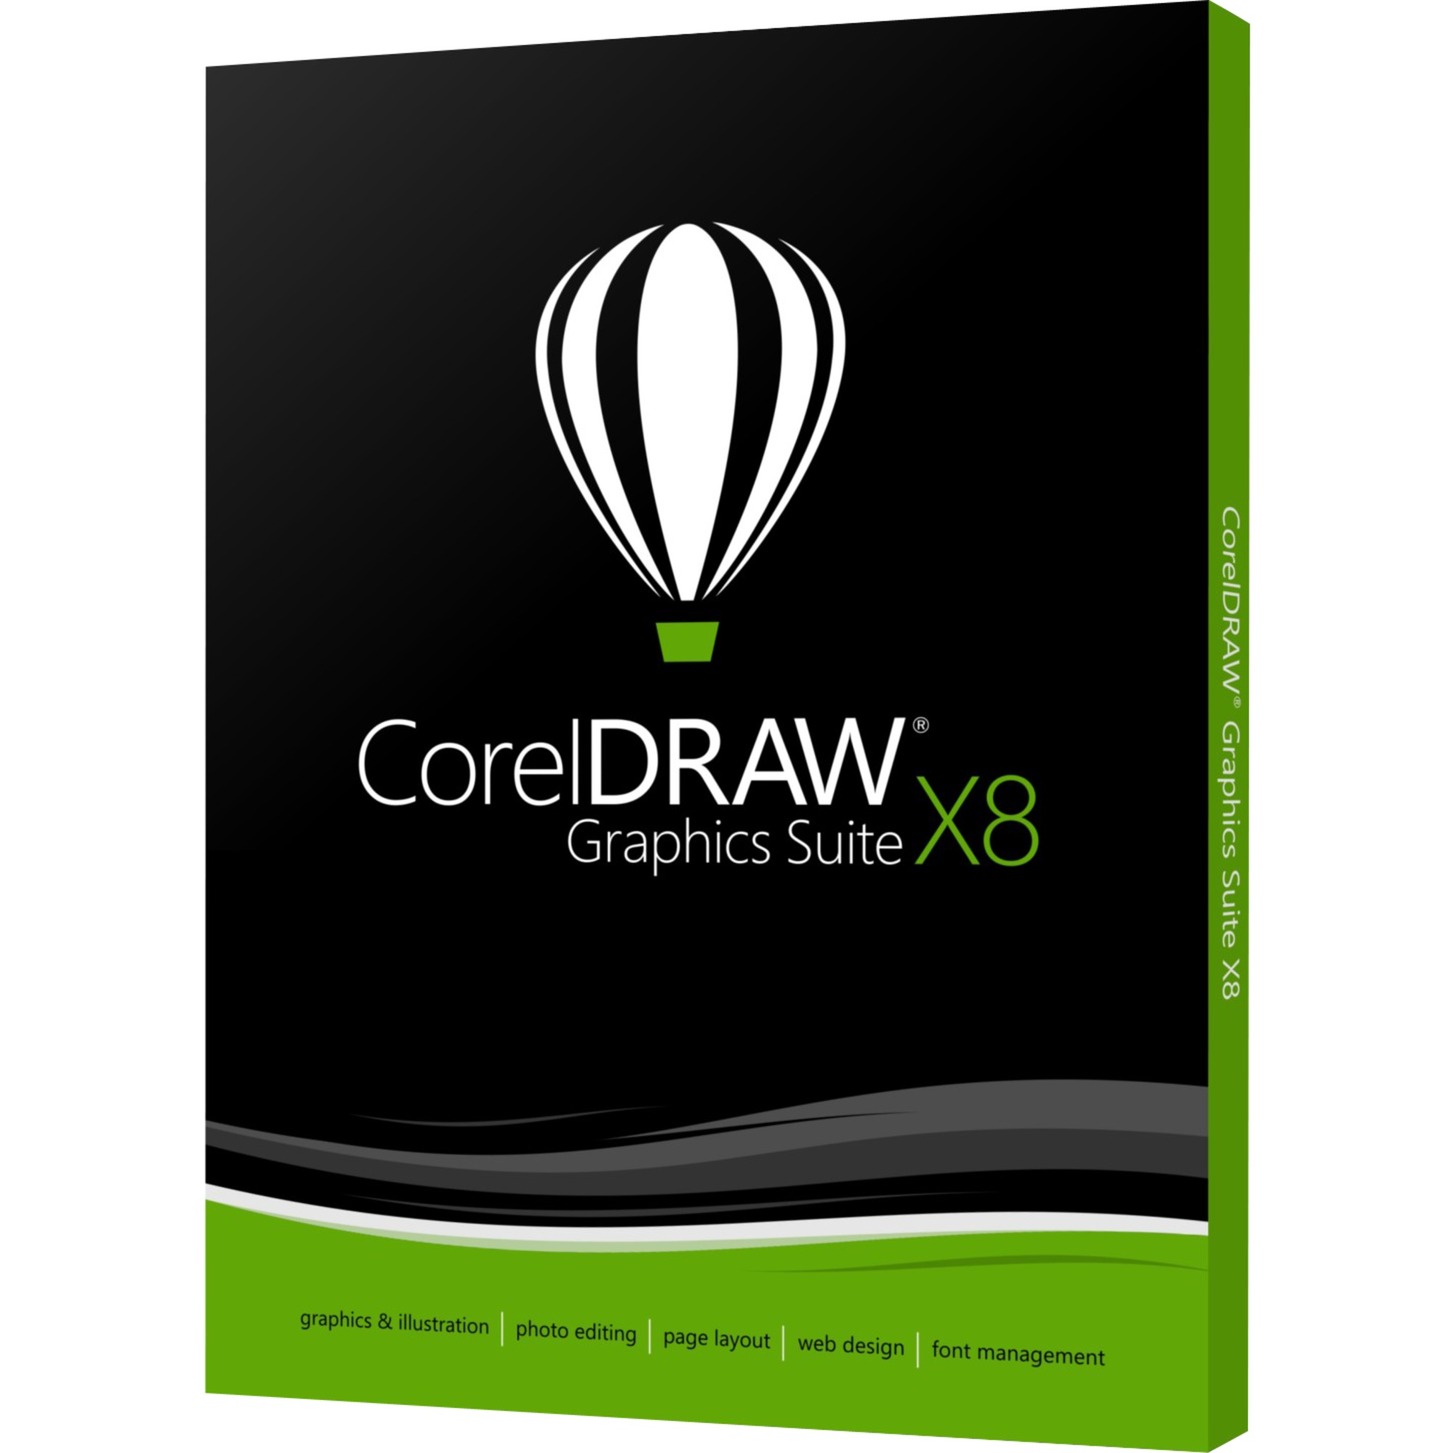 corel graphics suite x5